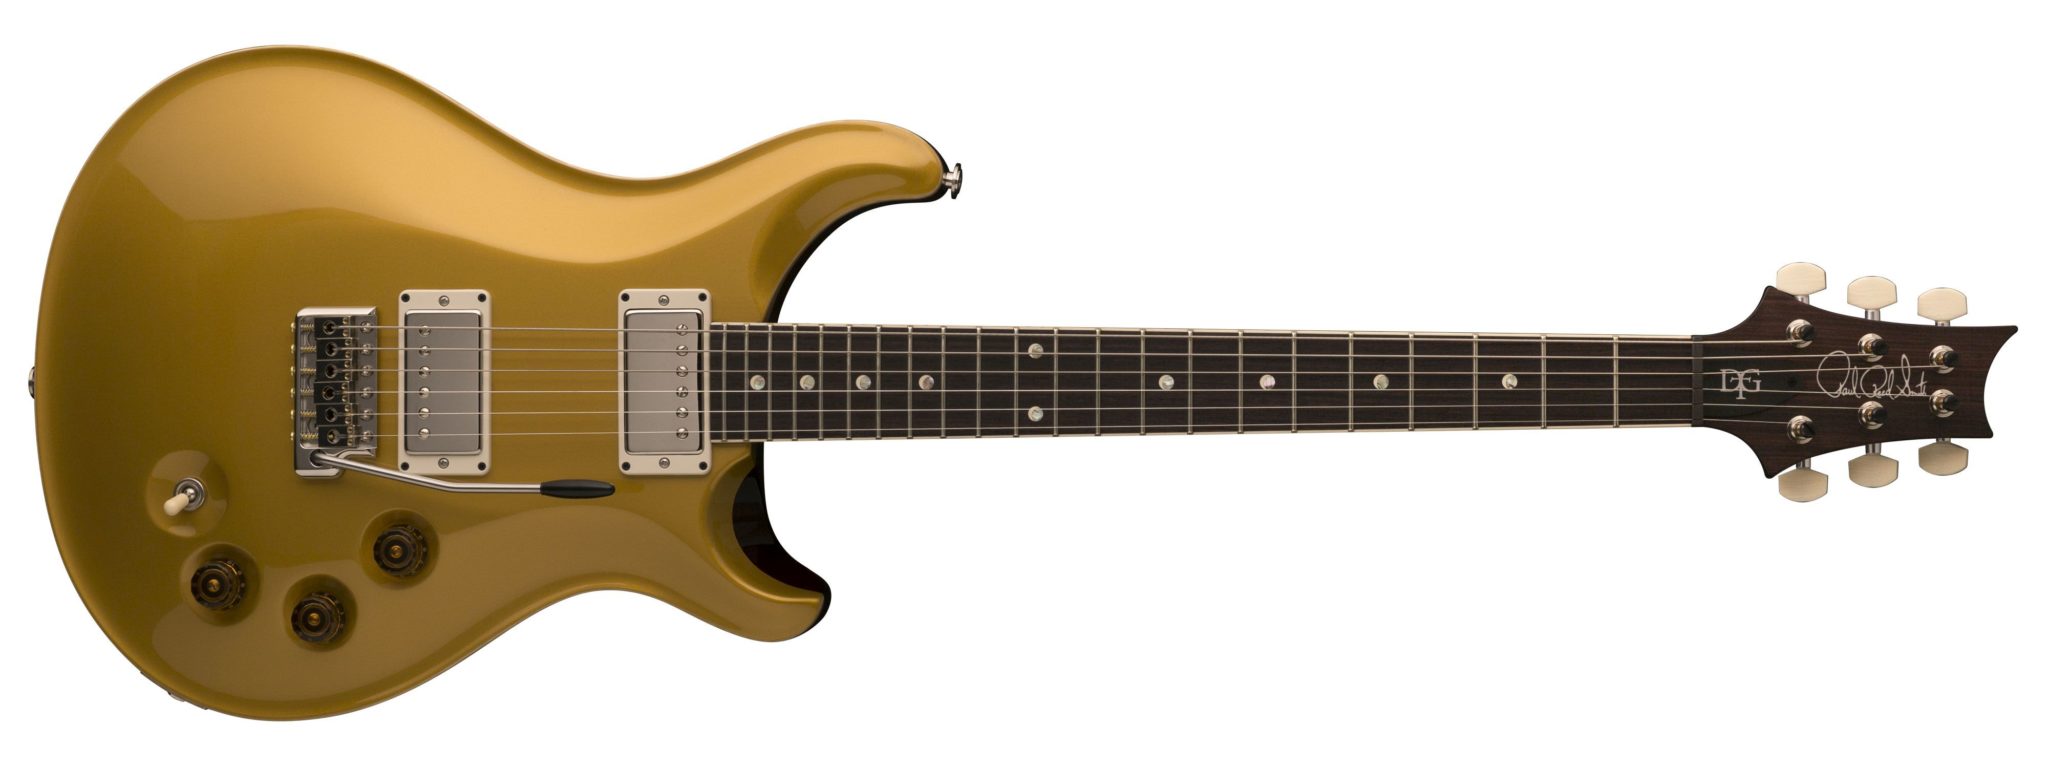 PRS DGT E-Gitarre in der Farbe Gold Top.